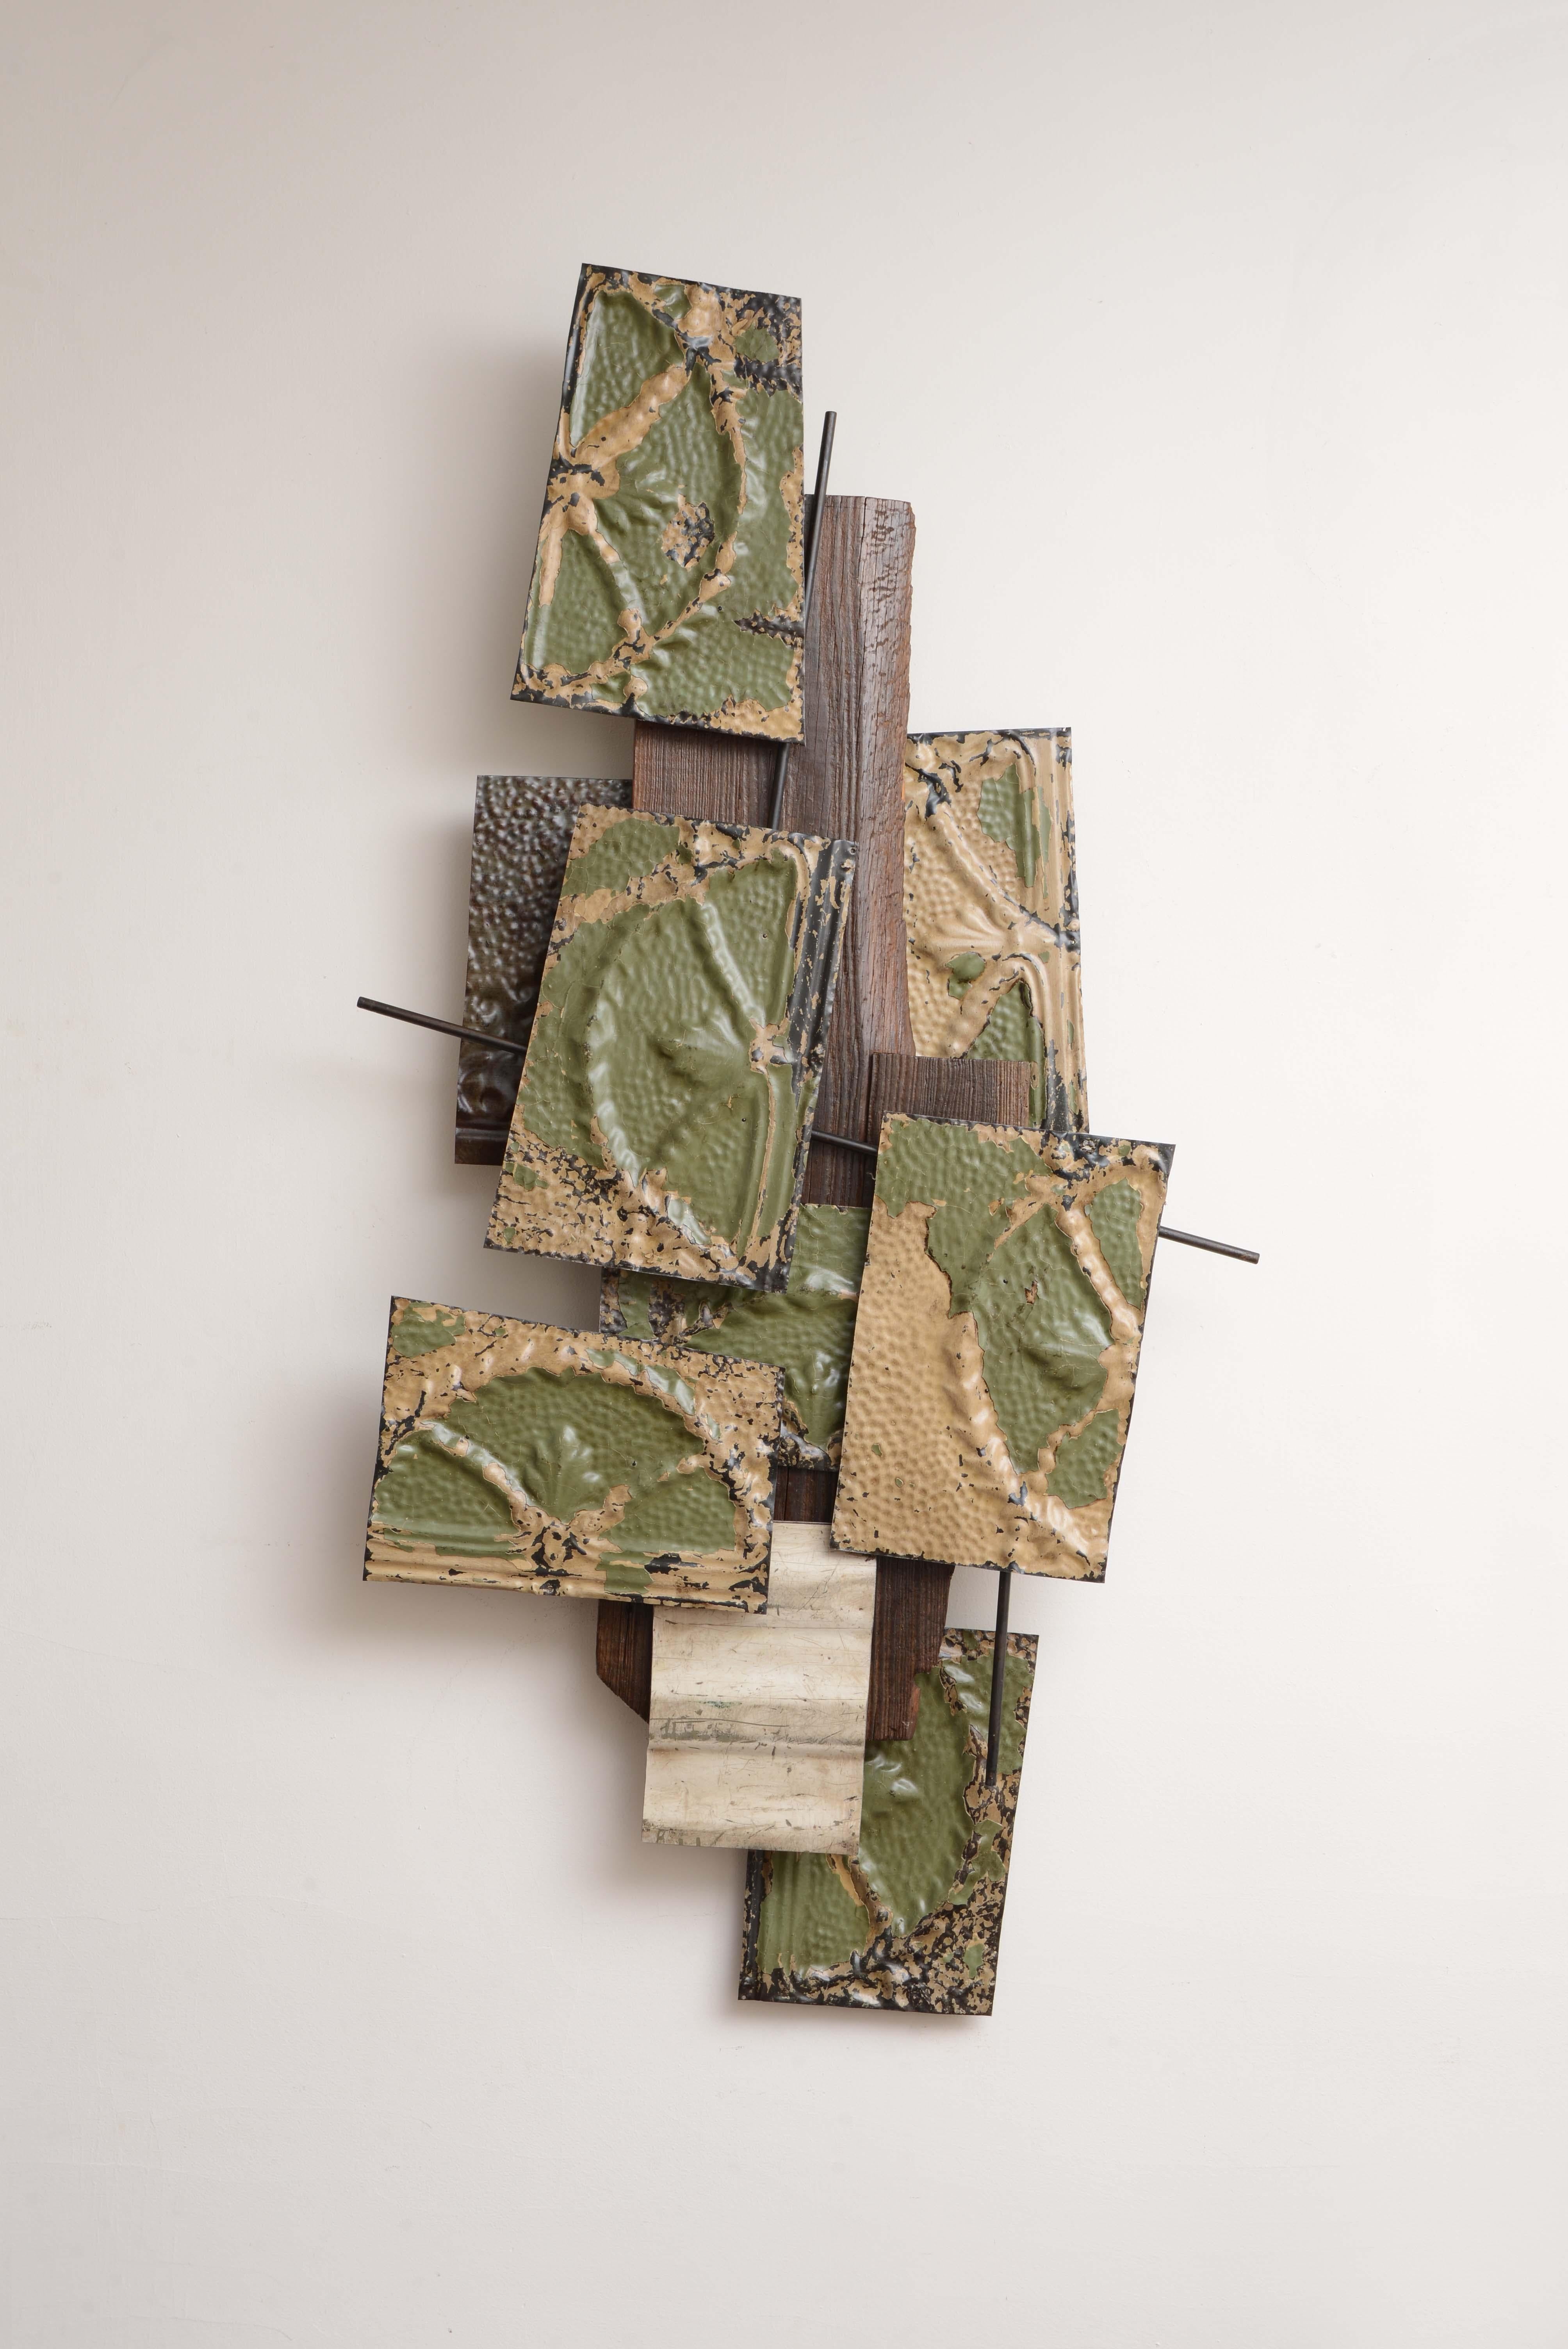 Koji Takei Abstract Sculpture – Zinnfliesen mit Rods